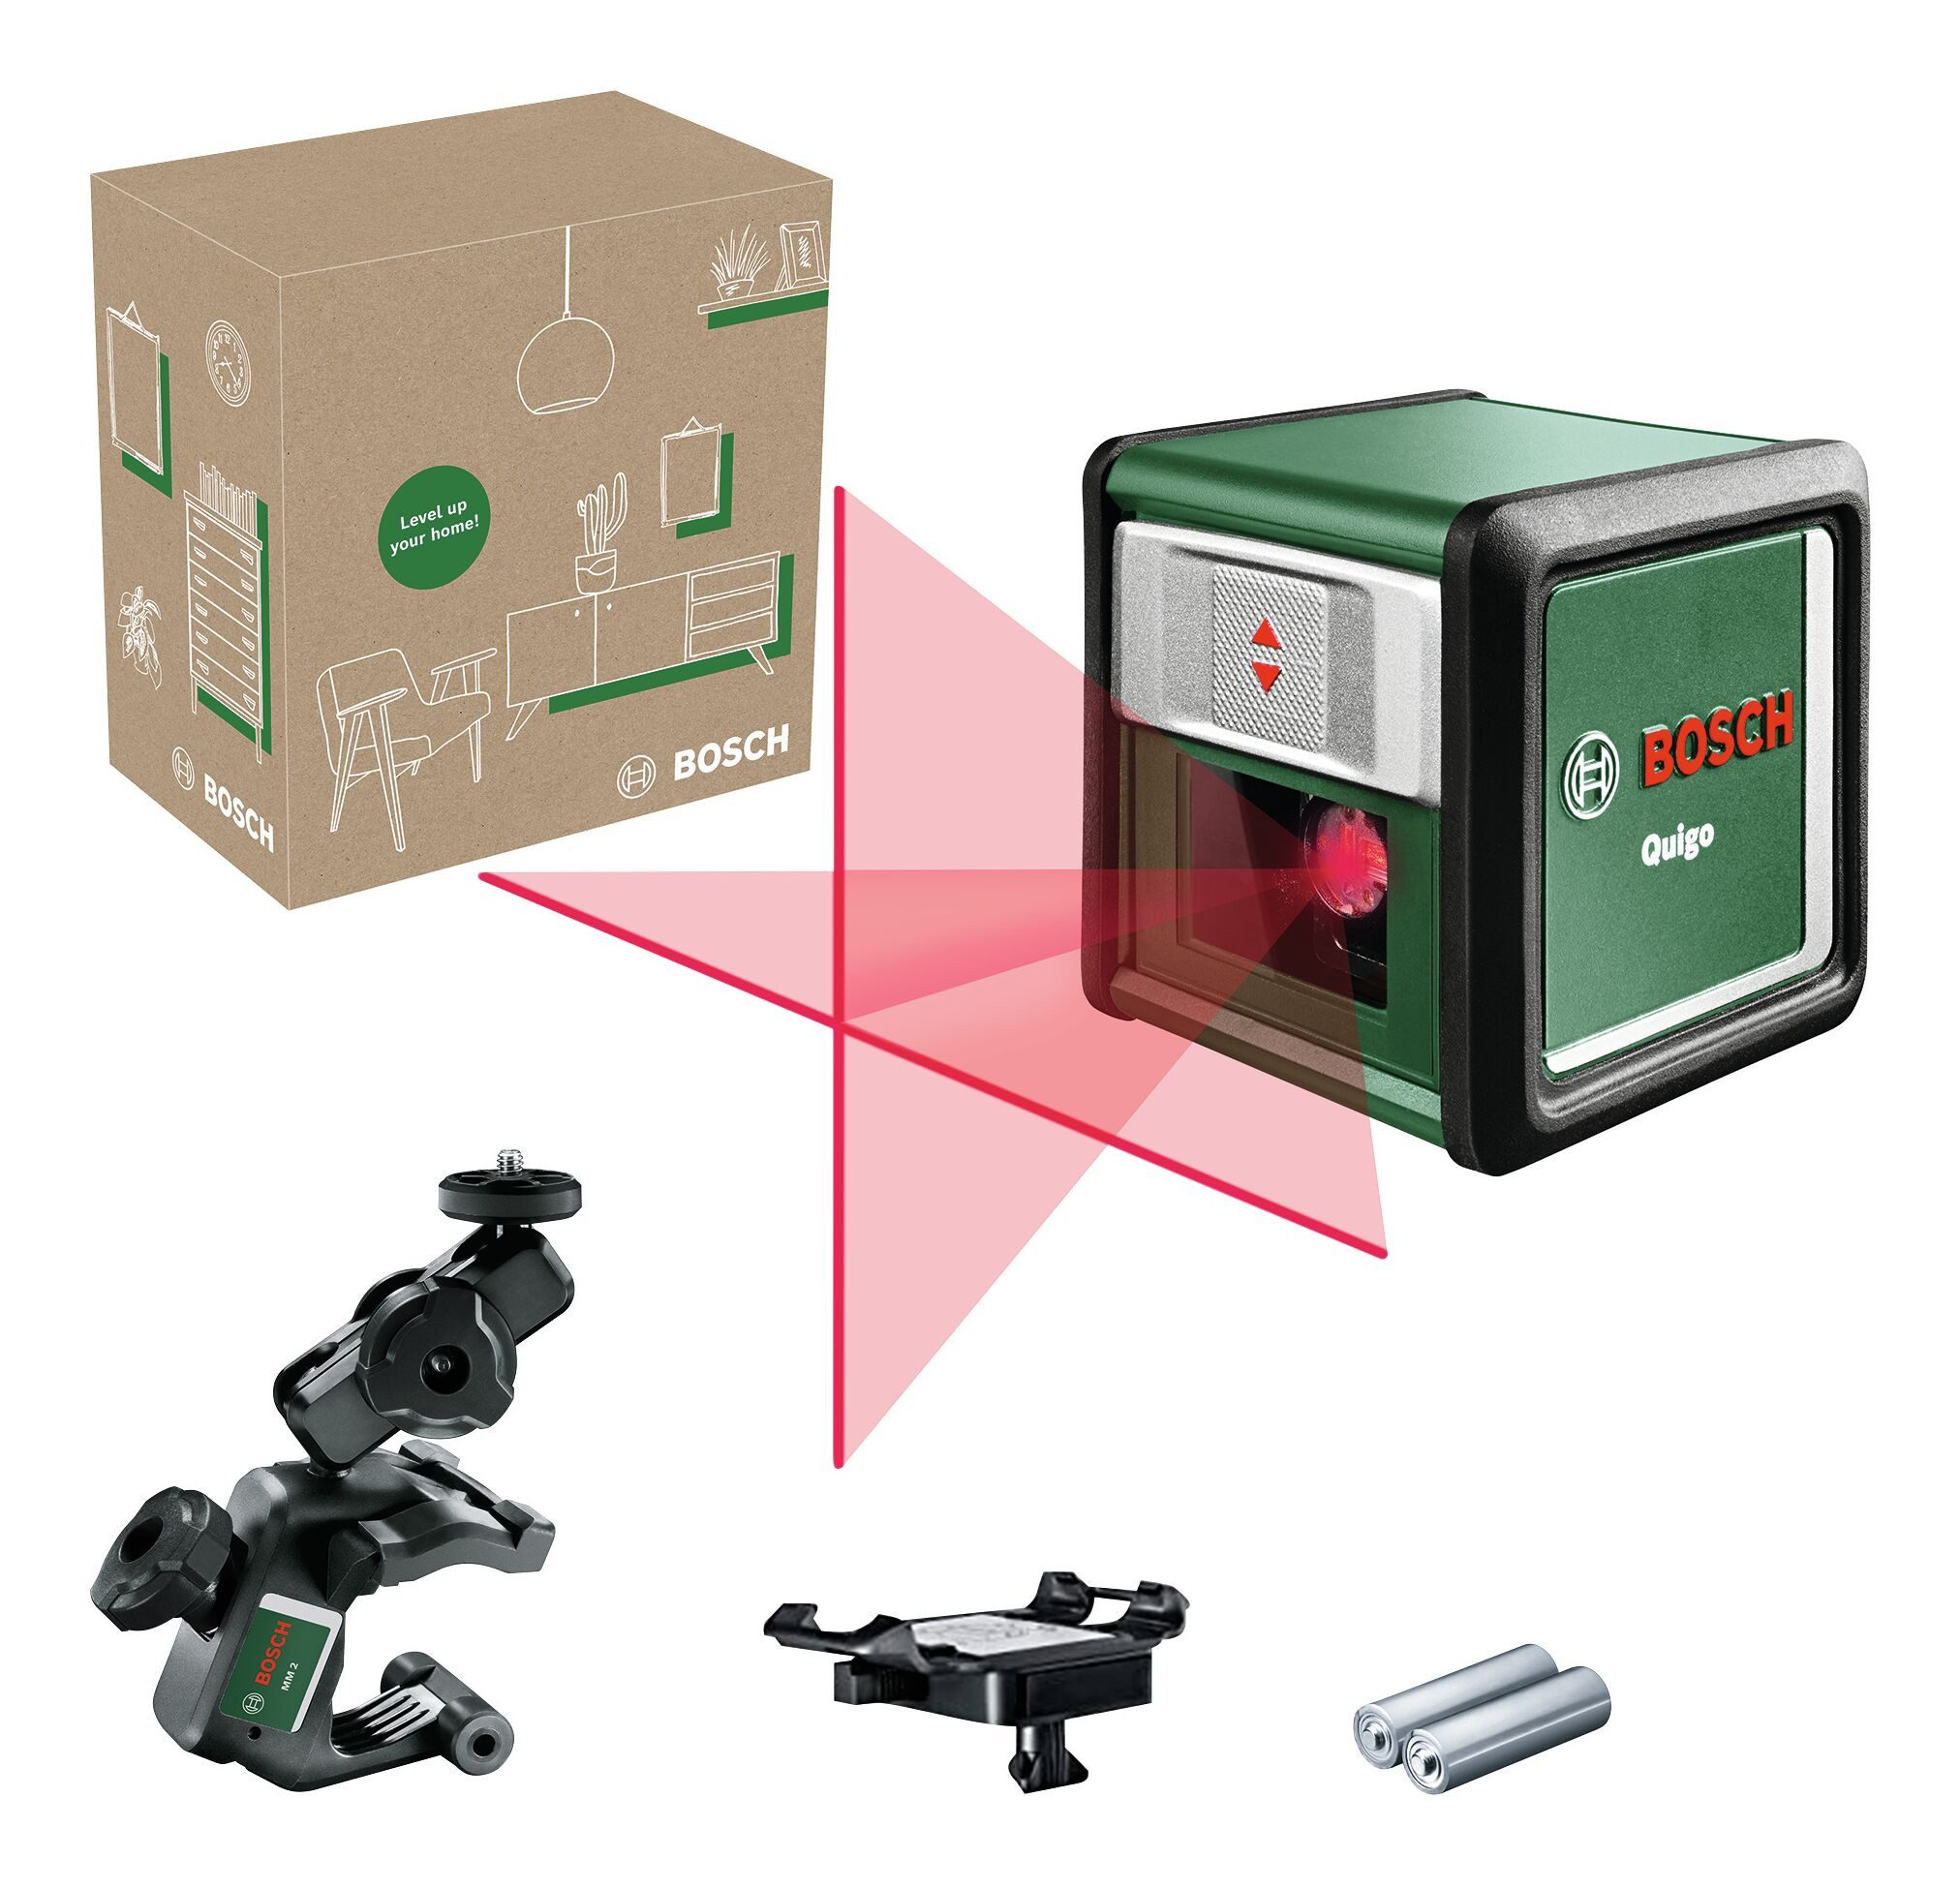 BOSCH Punkt- und Linienlaser Quigo, Kreuzlinien-Laser - im eCommerce-Karton